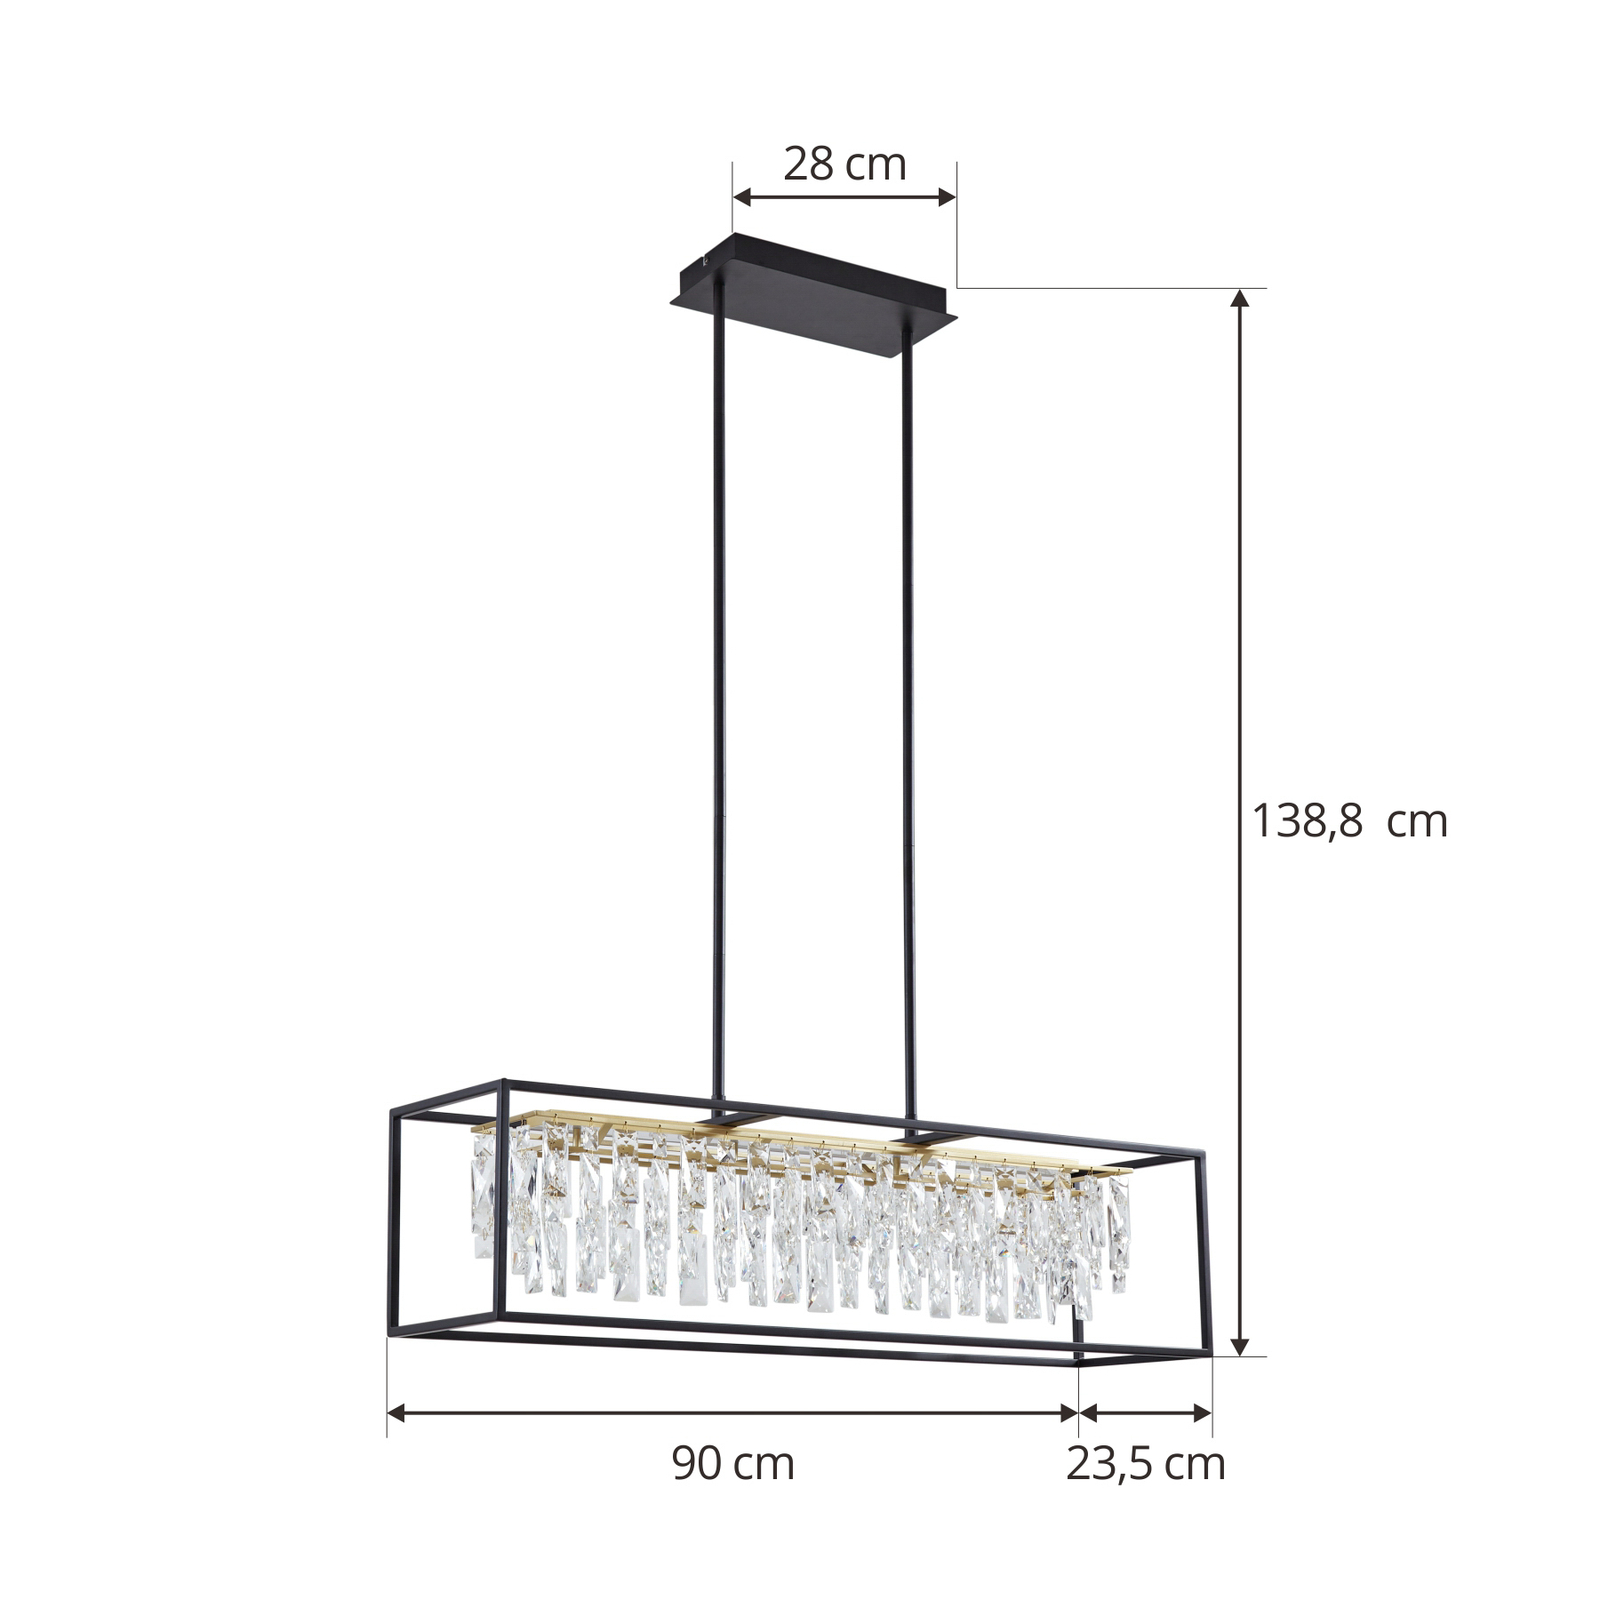 Lucande Kassi LED hanging light, 3,000K, dimmable, crystal optics